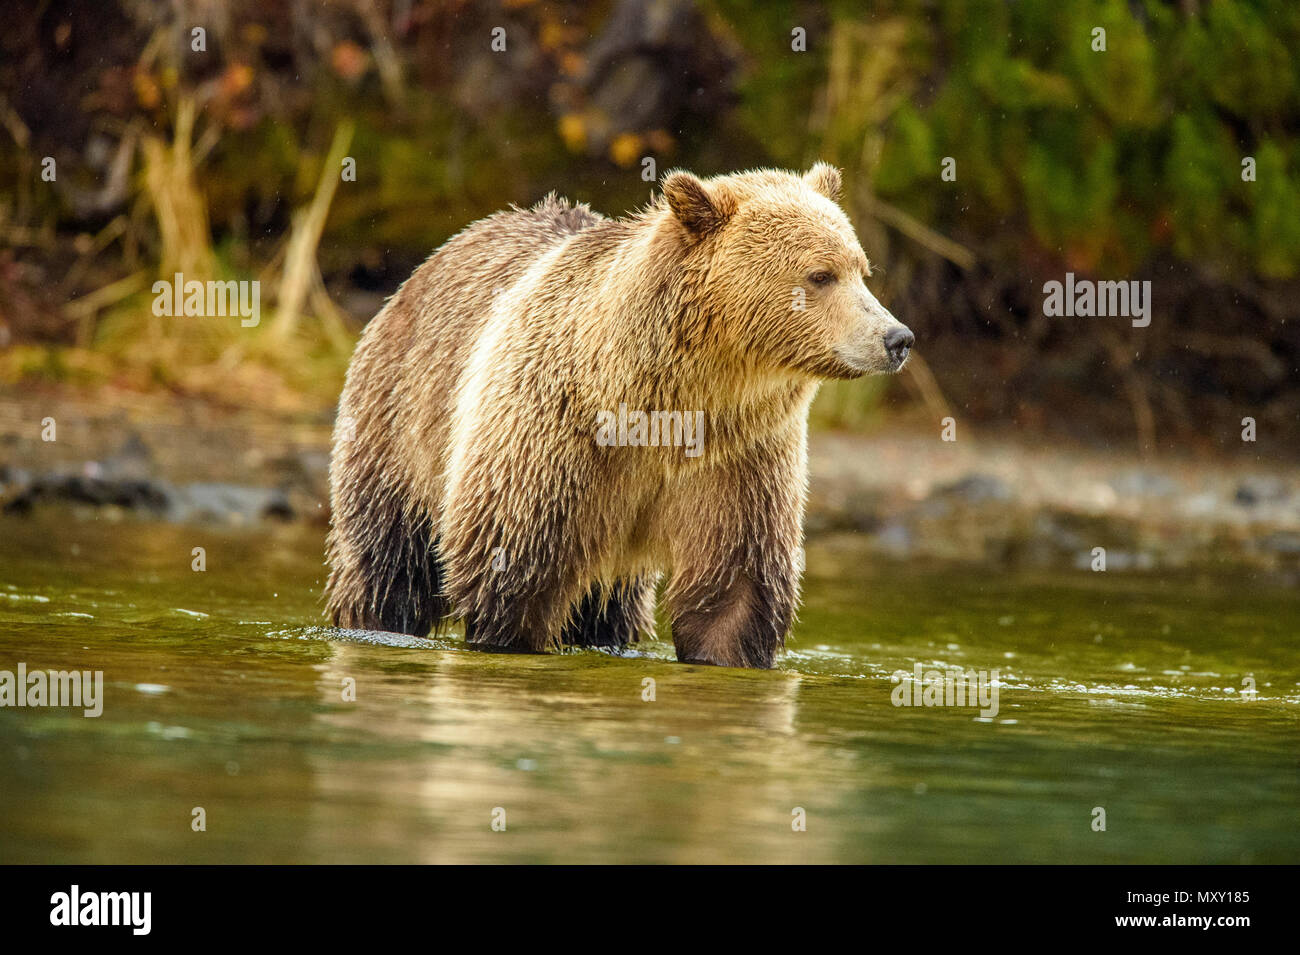 Ours grizzli (Ursus arctos) saumon sockeye de chasse le long de la rive d'une rivière à saumons de frai, Chilcotin Wilderness, British Columbia, Canada Banque D'Images